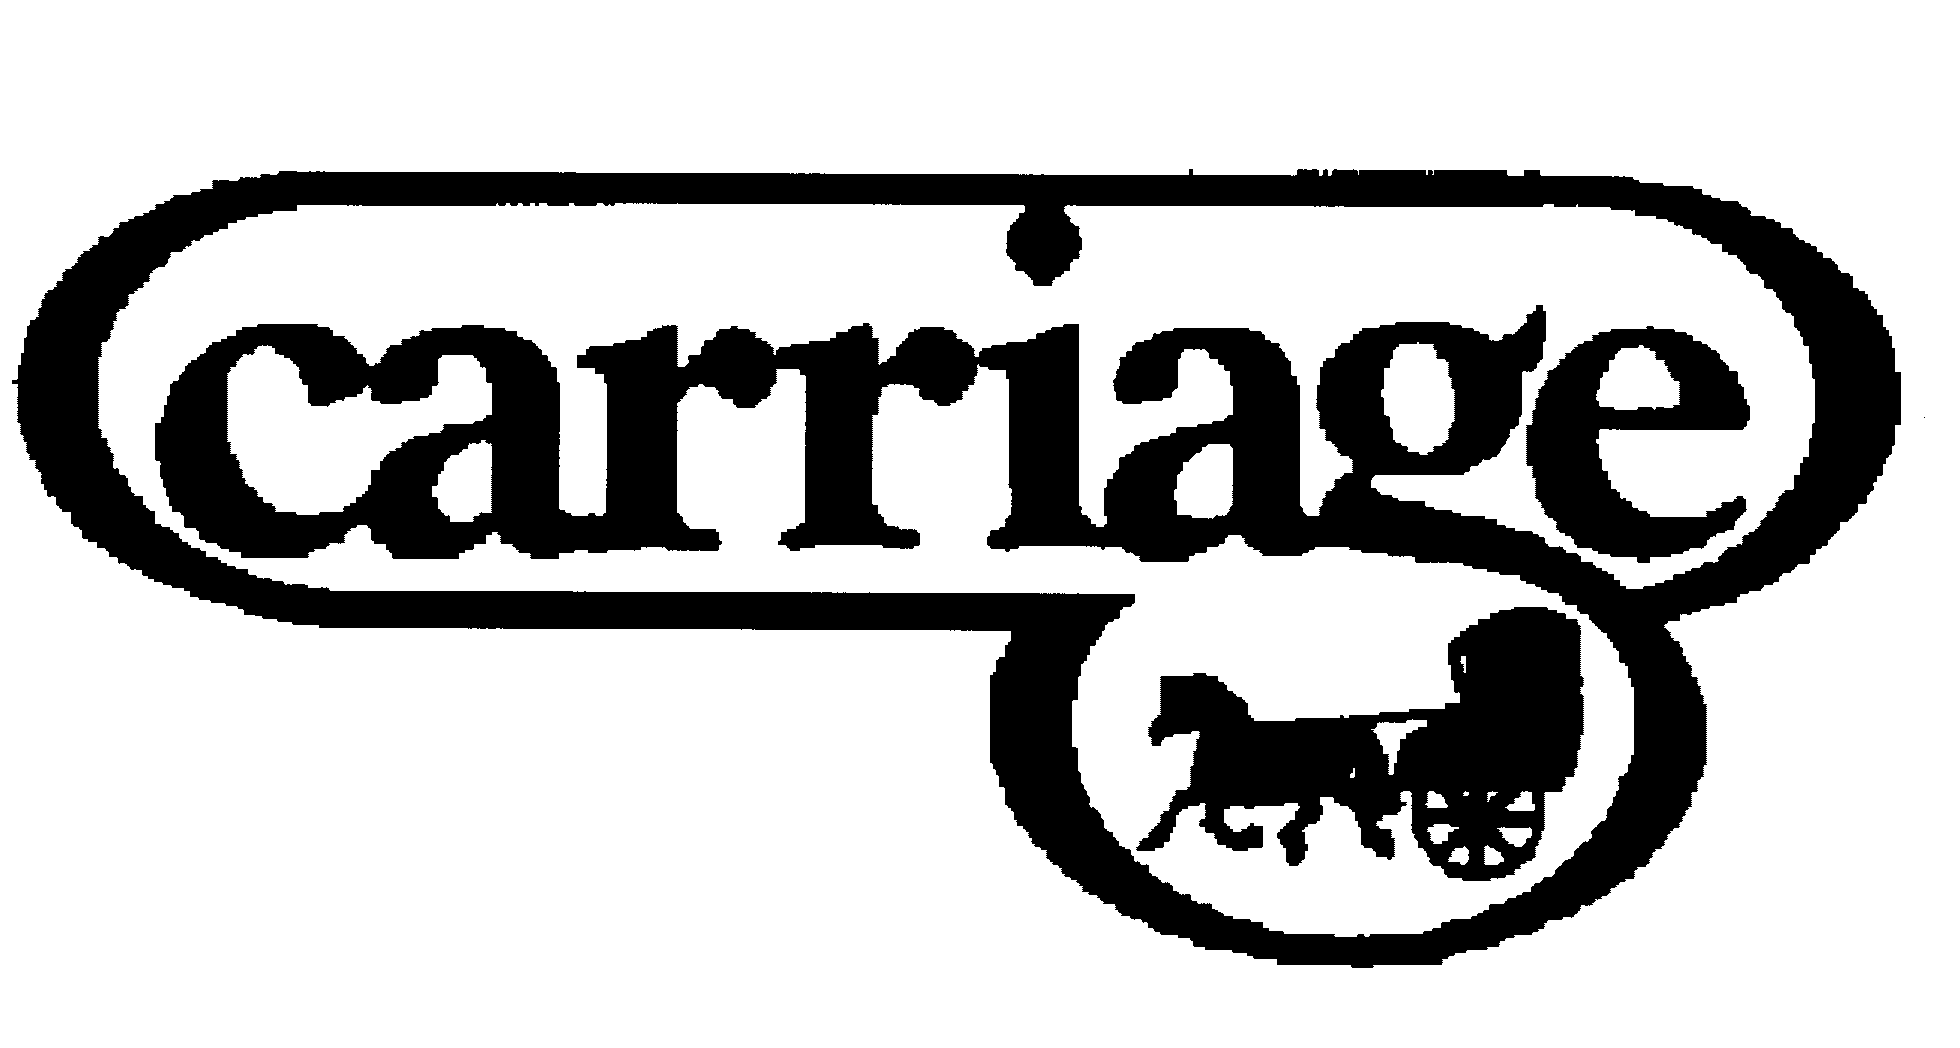 Trademark Logo CARRIAGE